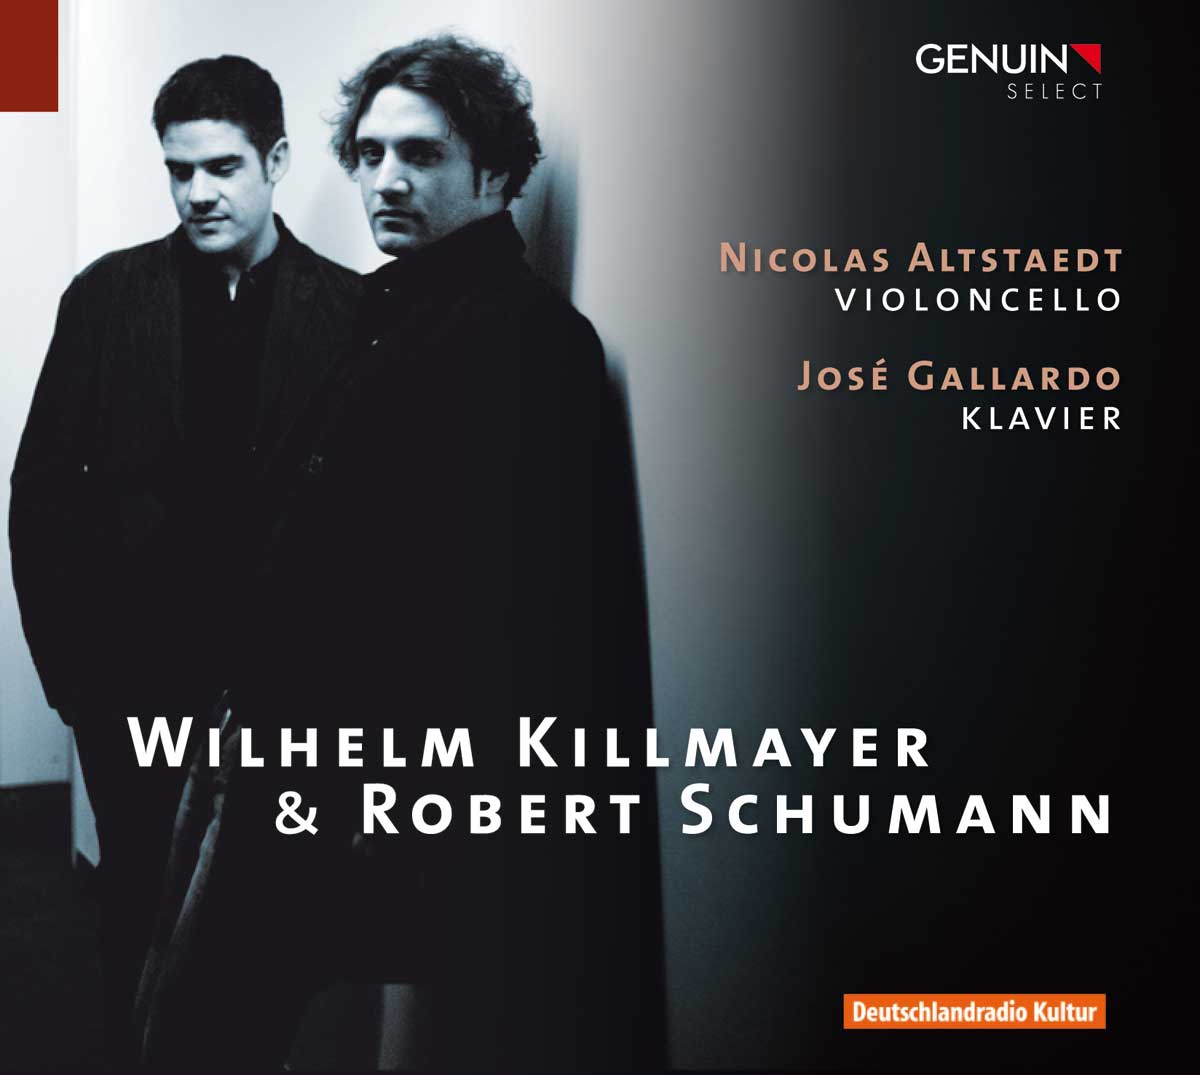 CD album cover 'Wilhelm Killmayer & Robert Schumann' (GEN 10187) with Nicolas Altstaedt, Jos� Gallardo